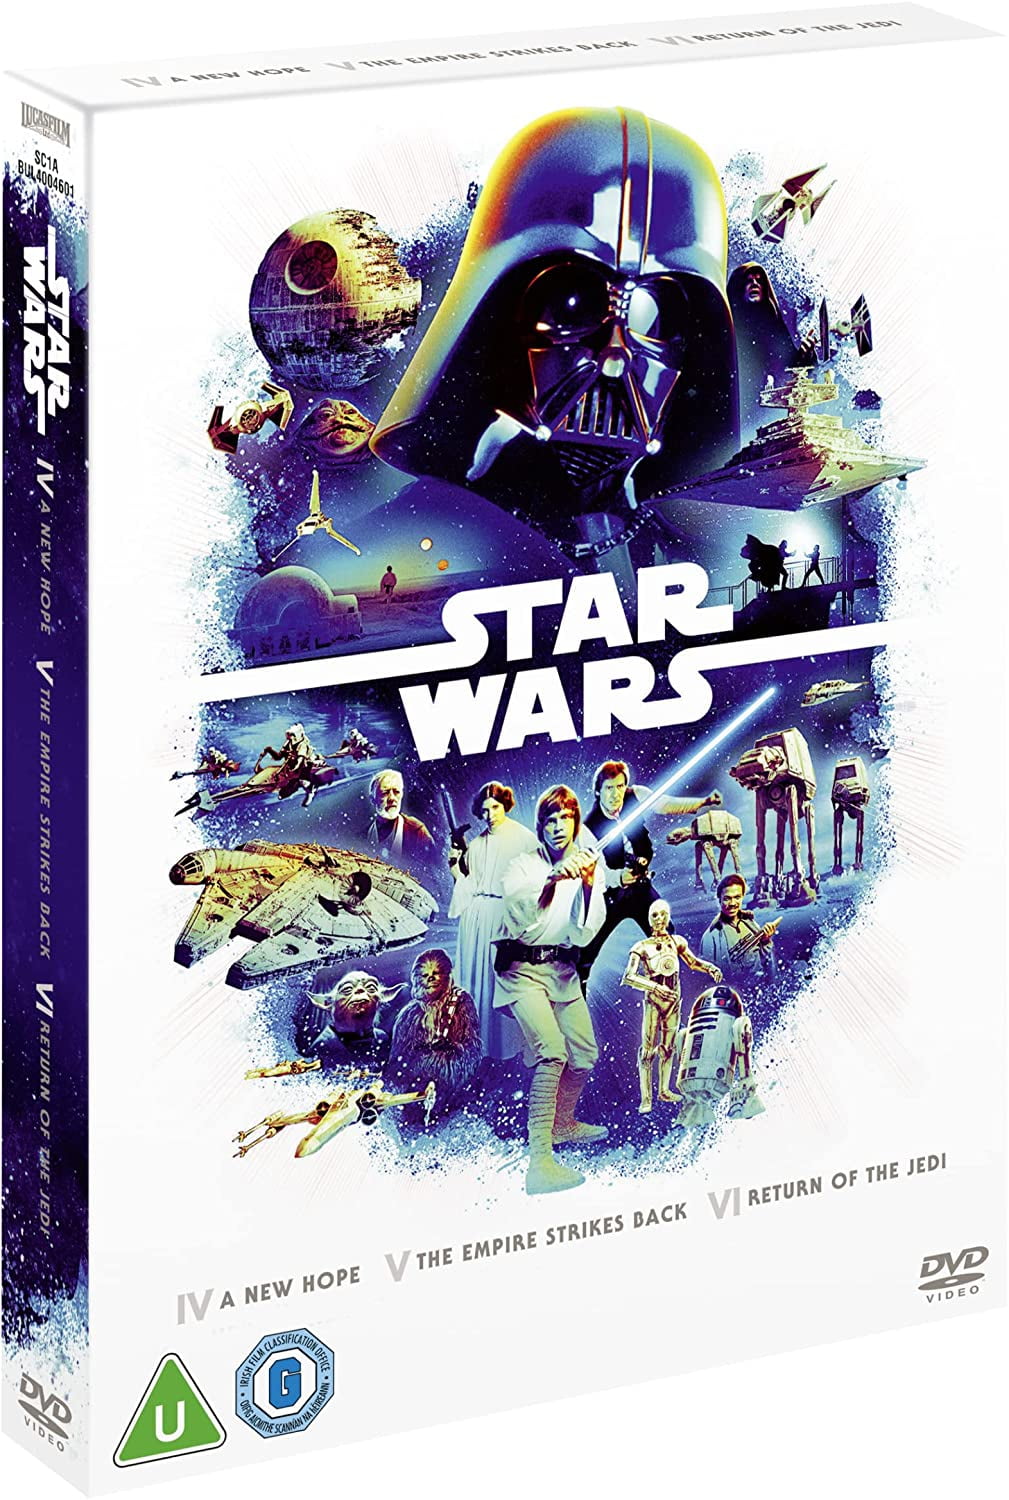 Space Wars - Movie-Box DVD-Box auf DVD - Portofrei bei bücher.de